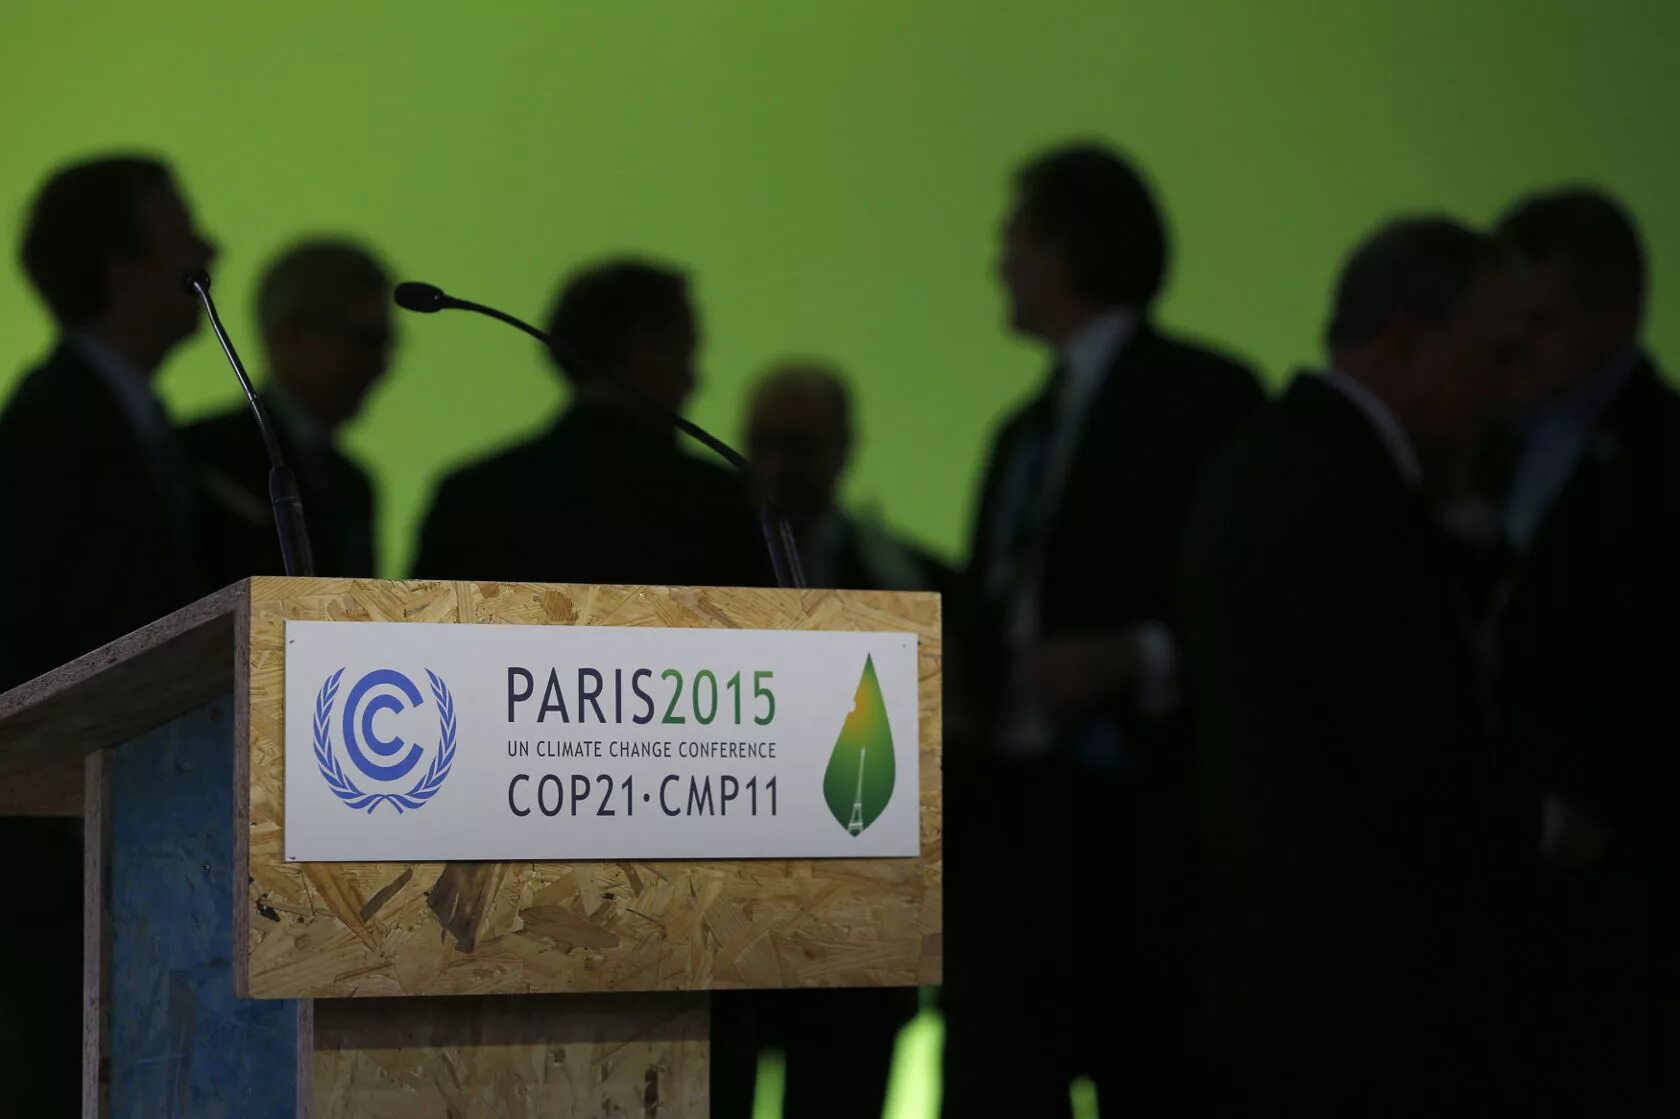 Парижское соглашение год. Парижское соглашение 2015 года. Парижский саммит по климату. Парижское соглашение по климату. Парижское соглашение 2015 года об изменении климата.